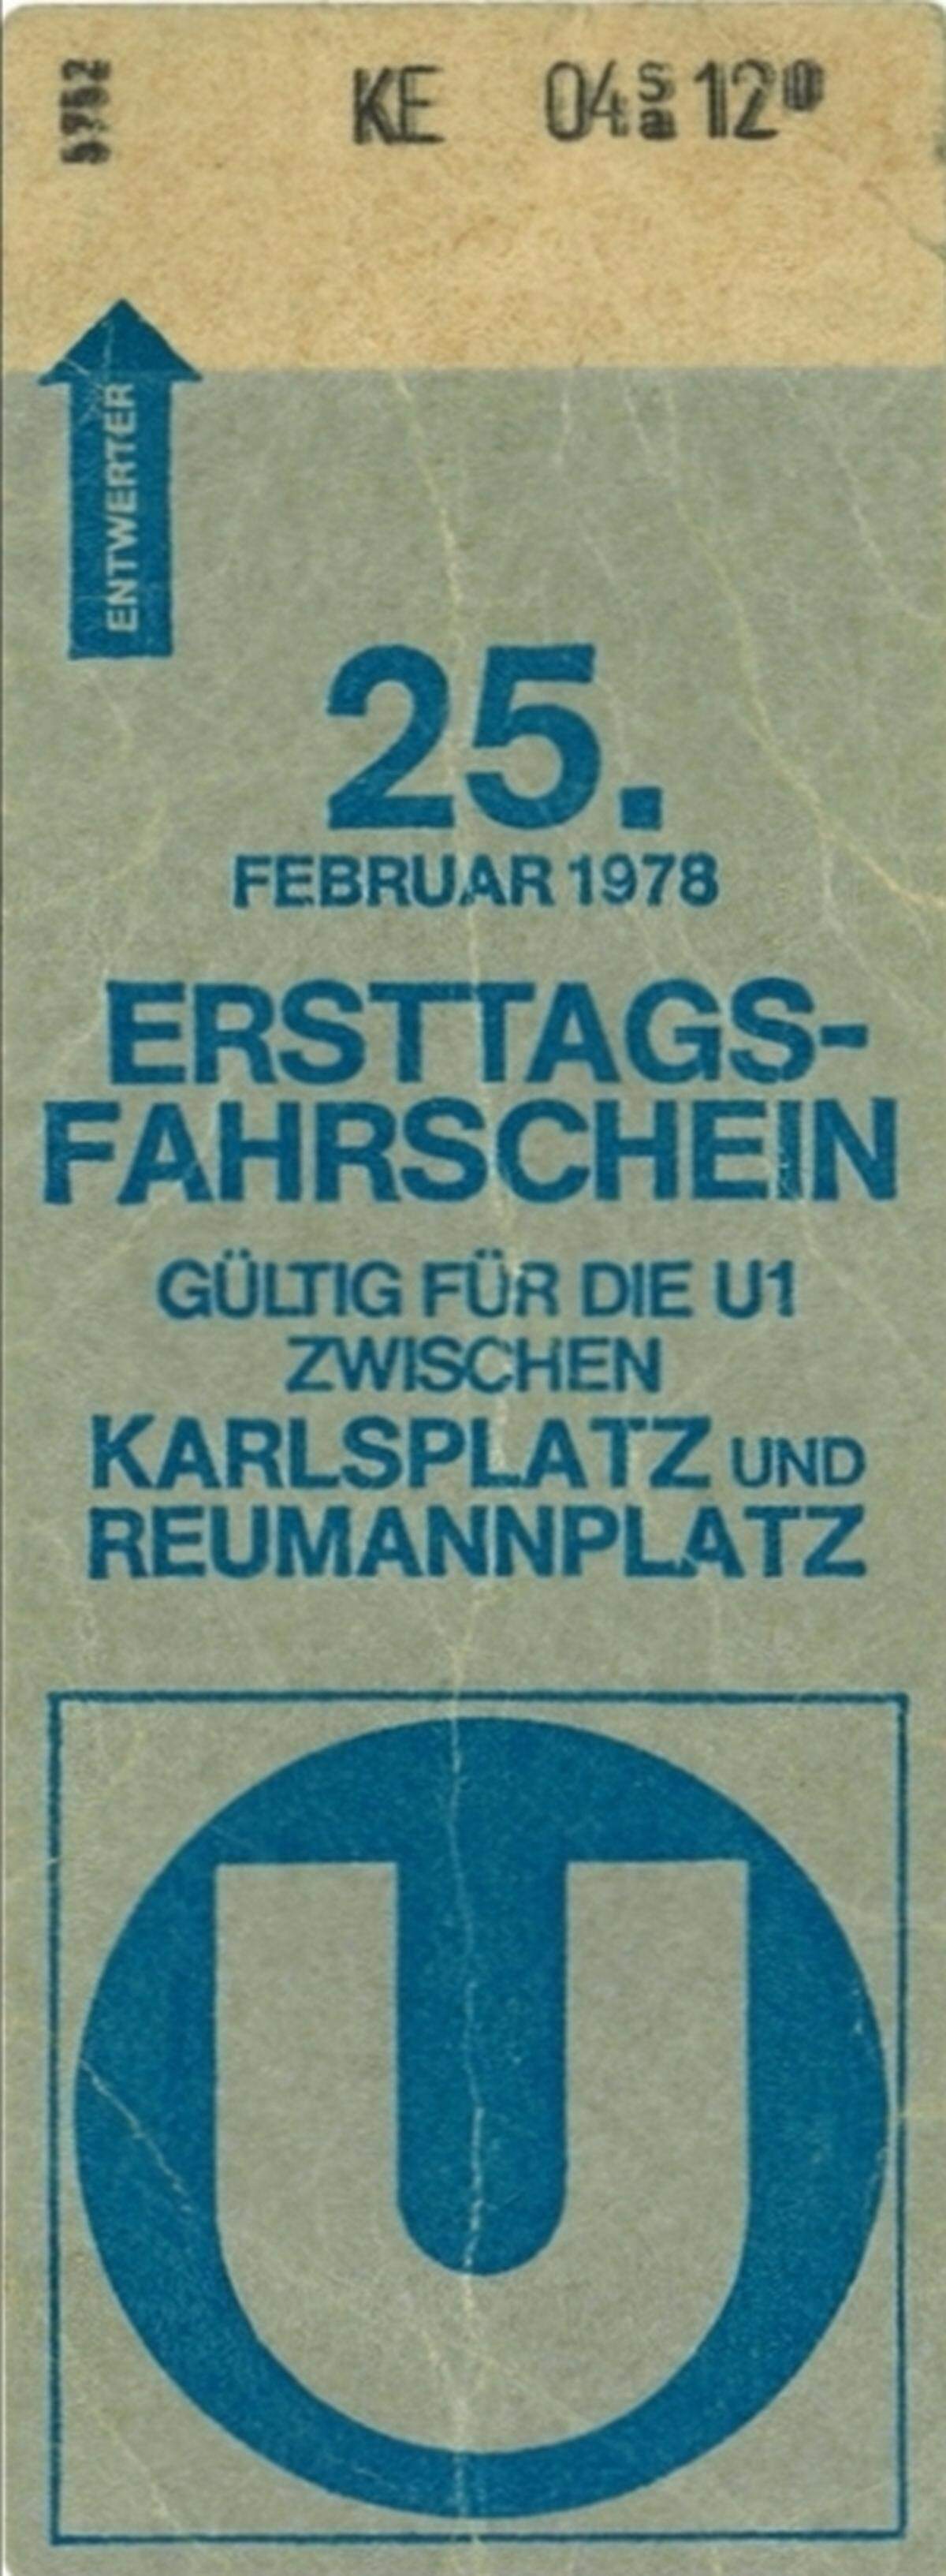 Zur Feier des Tages gaben die Wiener Stadtwerke für den 25. Februar 1978 eigene Ersttags-Fahrscheine heraus, mit denen die Bevölkerung kostenlos die U1 befahren konnte.